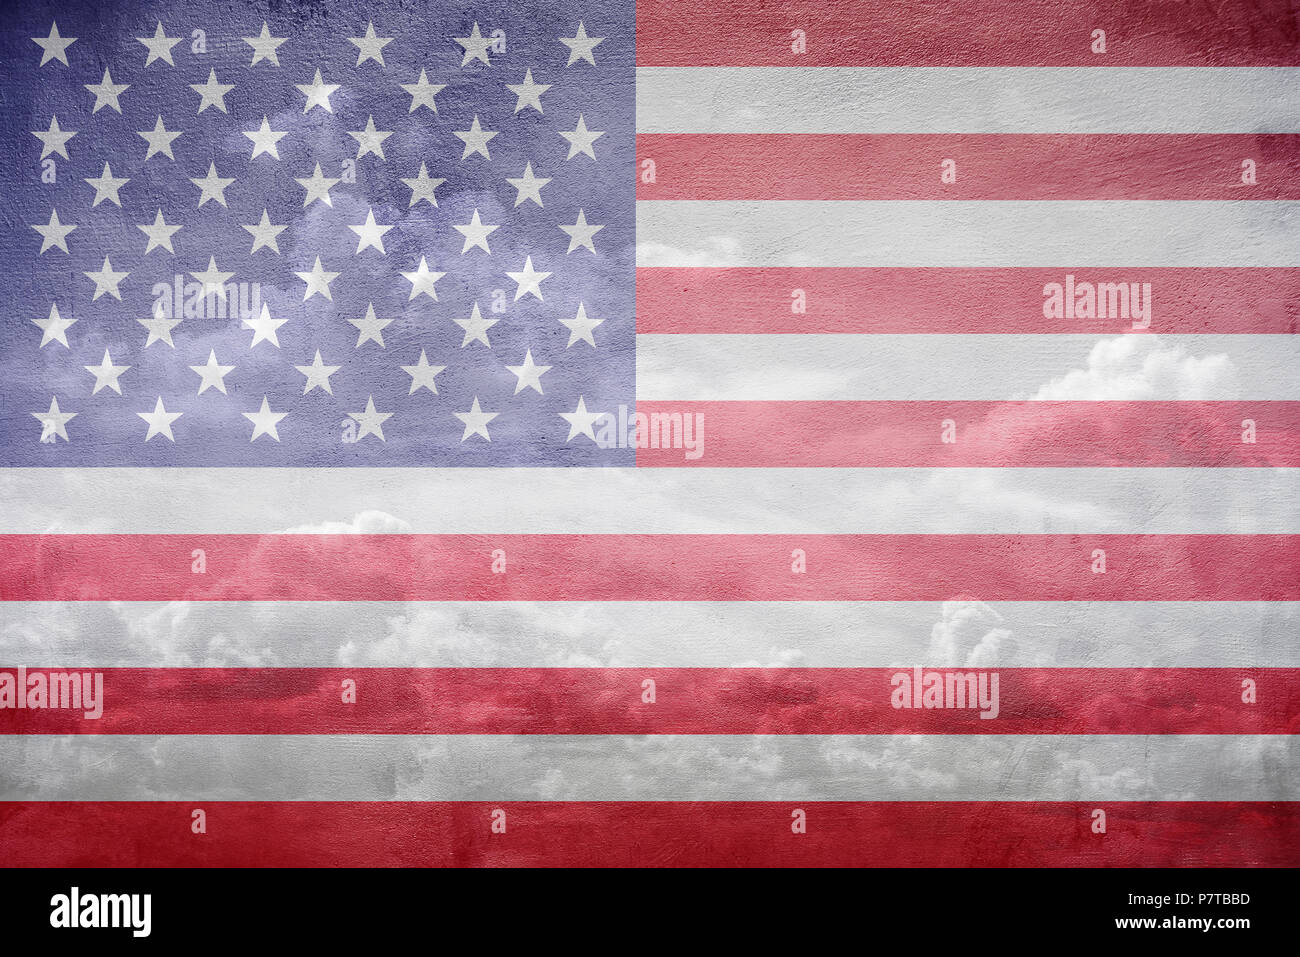 United States flag illustration Stock Photo